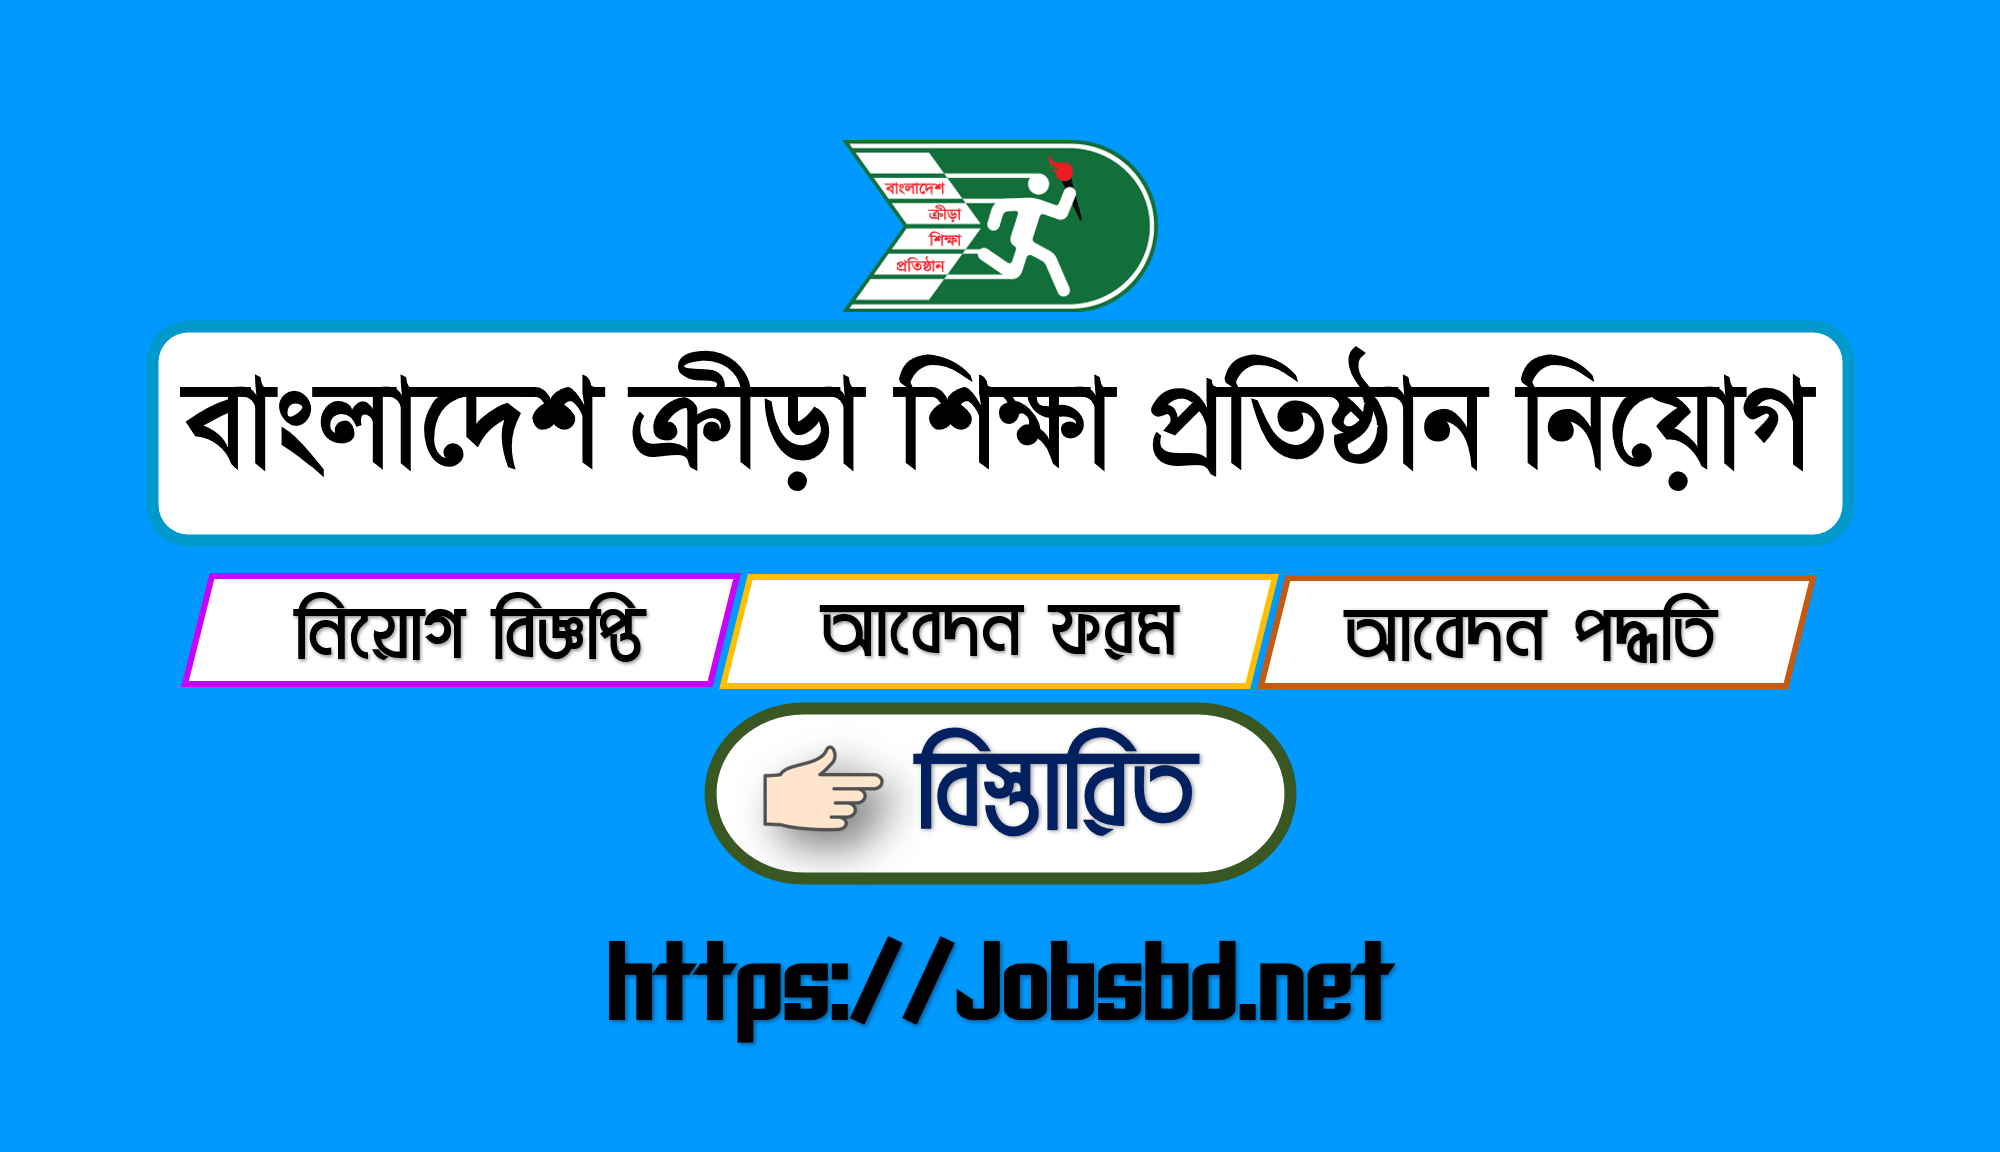 Bangladesh Krira Shikkha Protishtan Job Circular